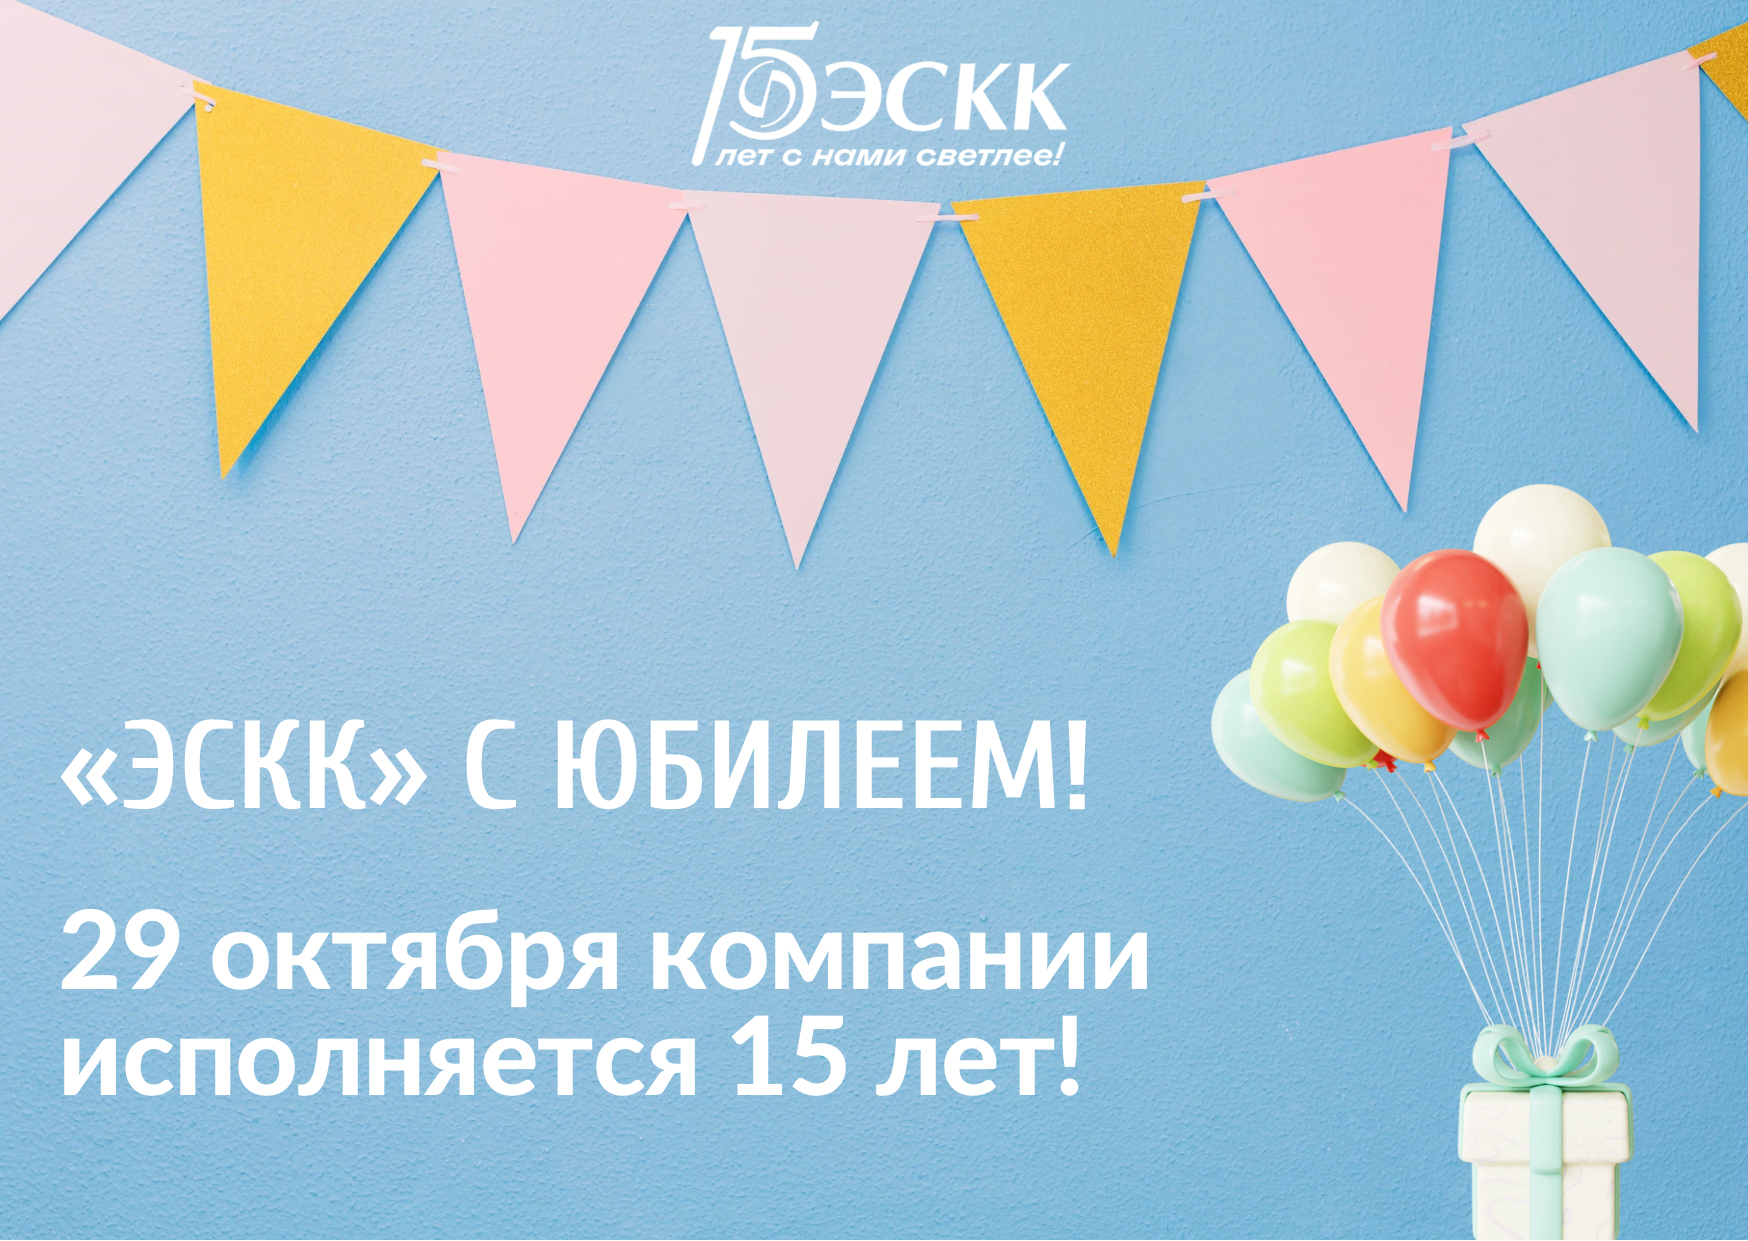 29 октября компании «ЭСКК» исполнилось 15 лет!